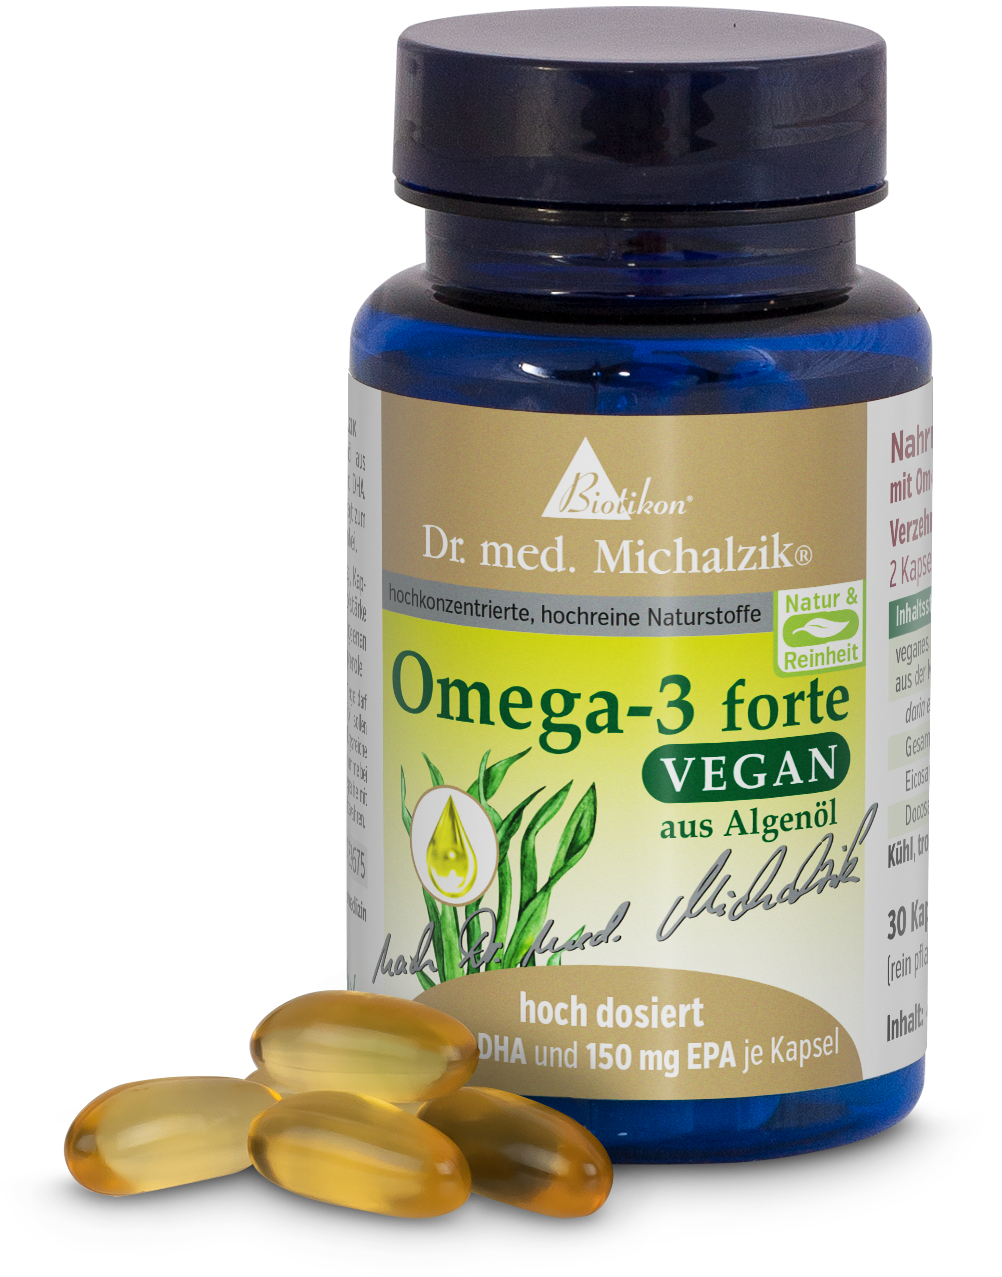 Omega-3 forte vegan - 30 Kapseln